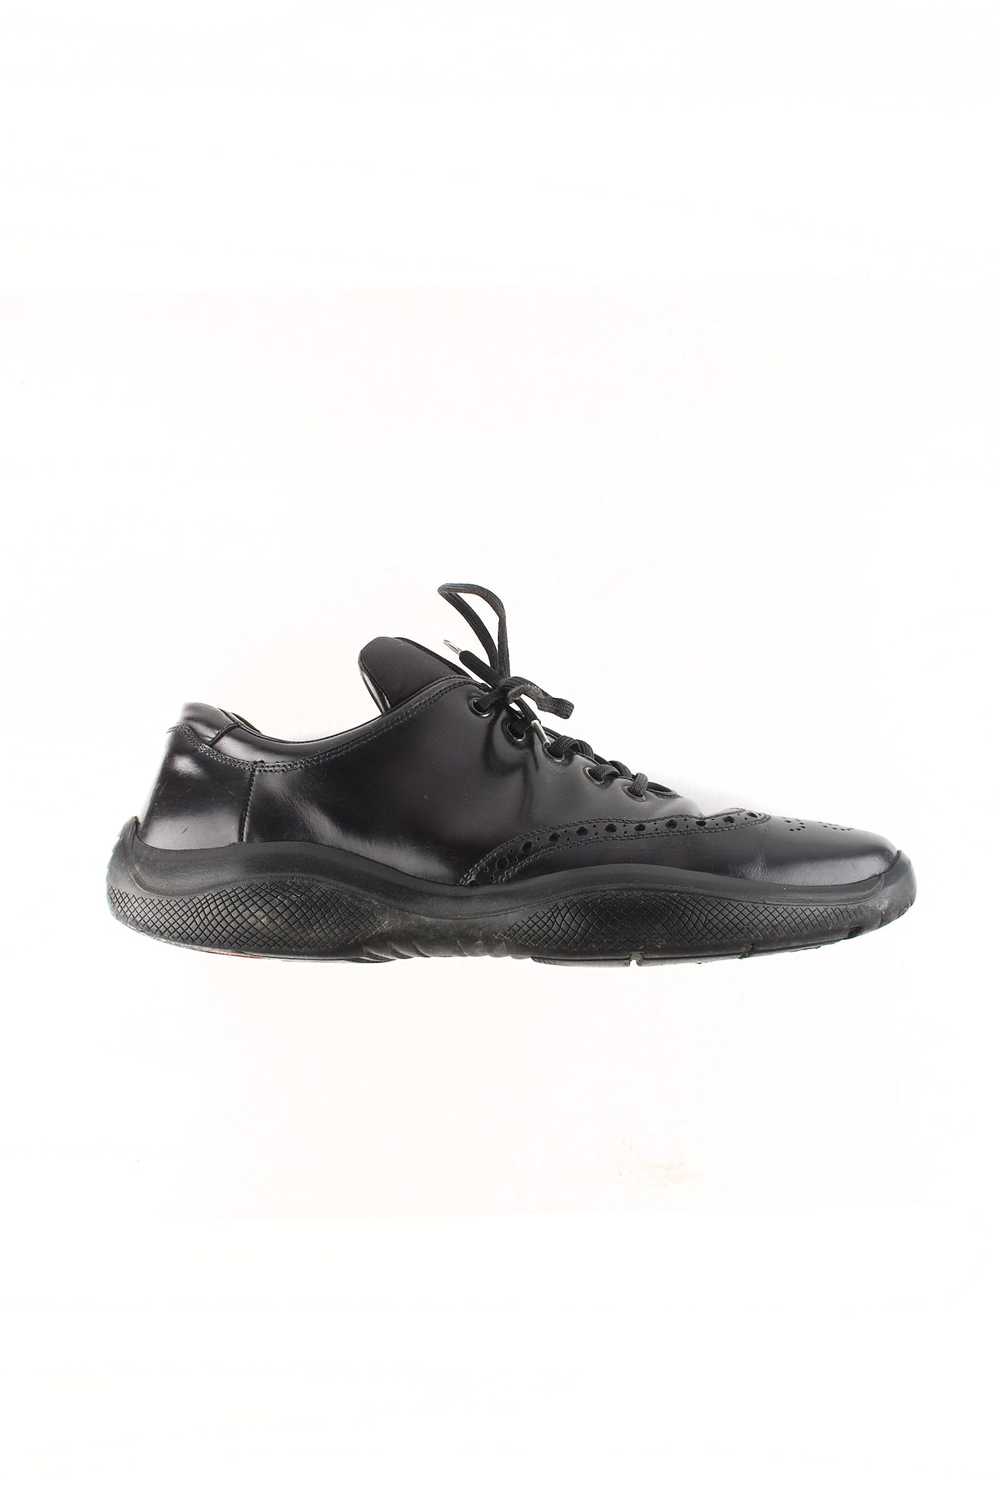 Prada Original Prada Leather Oxford Shoes sz.42EU… - image 3